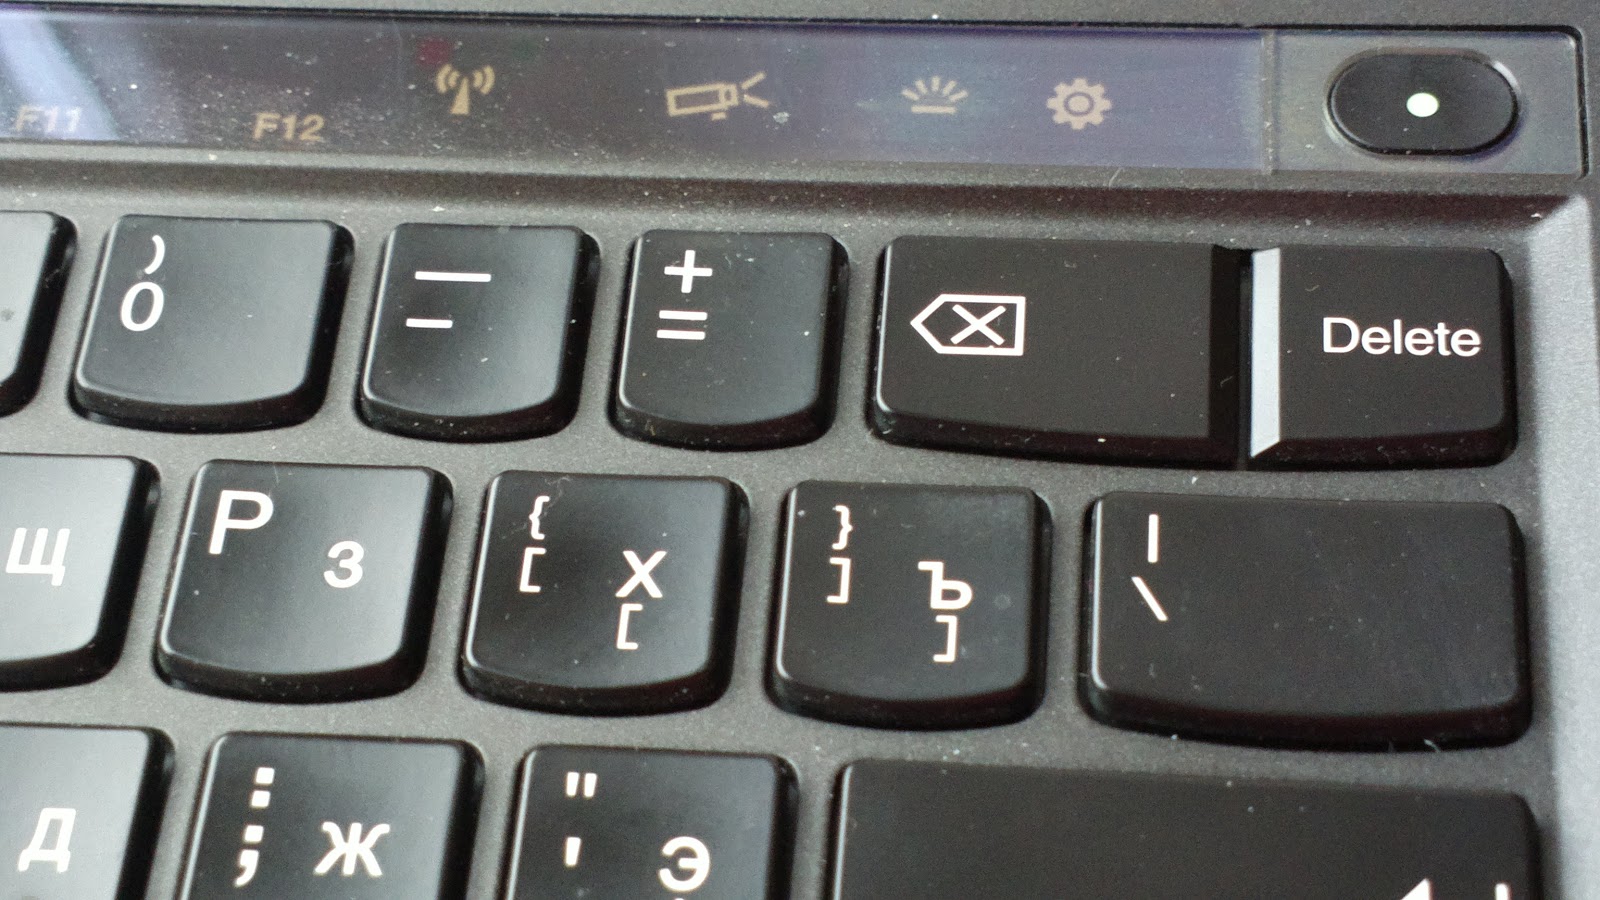 Где на ноуте кнопка. Клавиша делете на ноутбуке. Кнопка делейт на ноутбуке. Кнопка delete на клавиатуре. Клавиатура ноутбука кнопка делет.